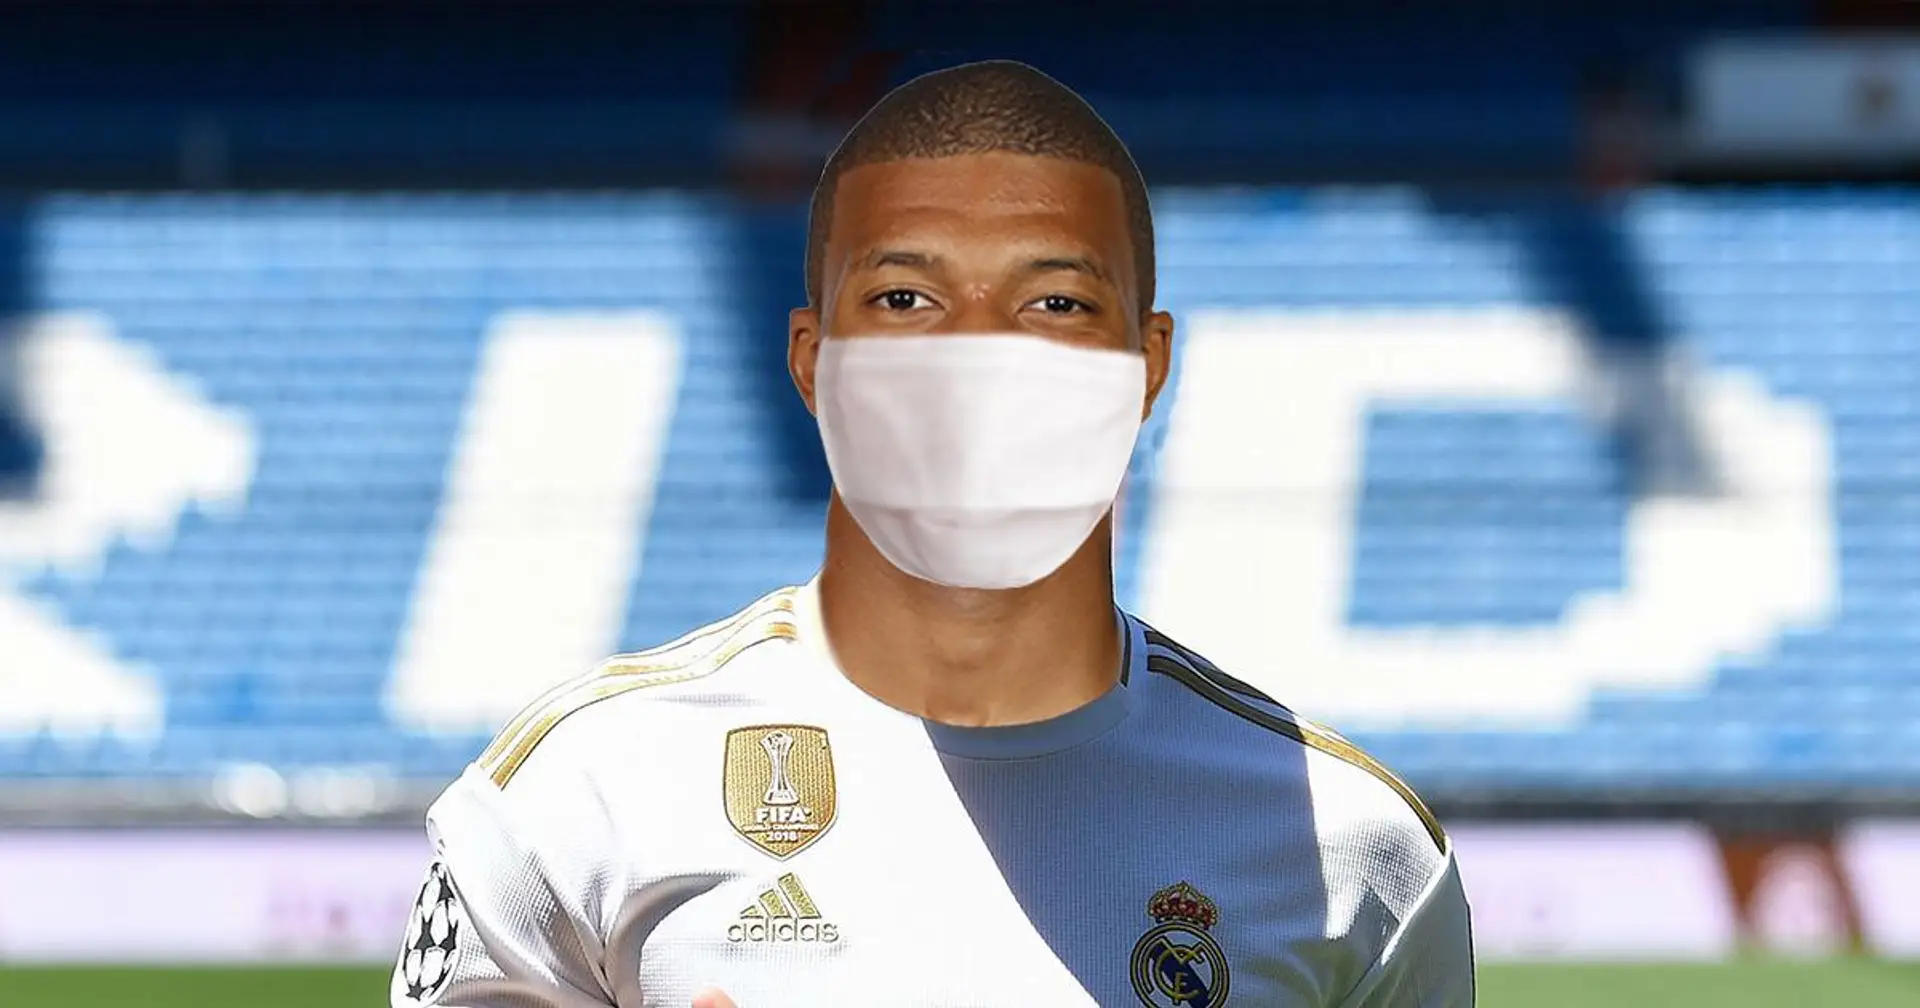 🚨 LO ÚLTIMO: Kylian Mbappé firma por el Real Madrid